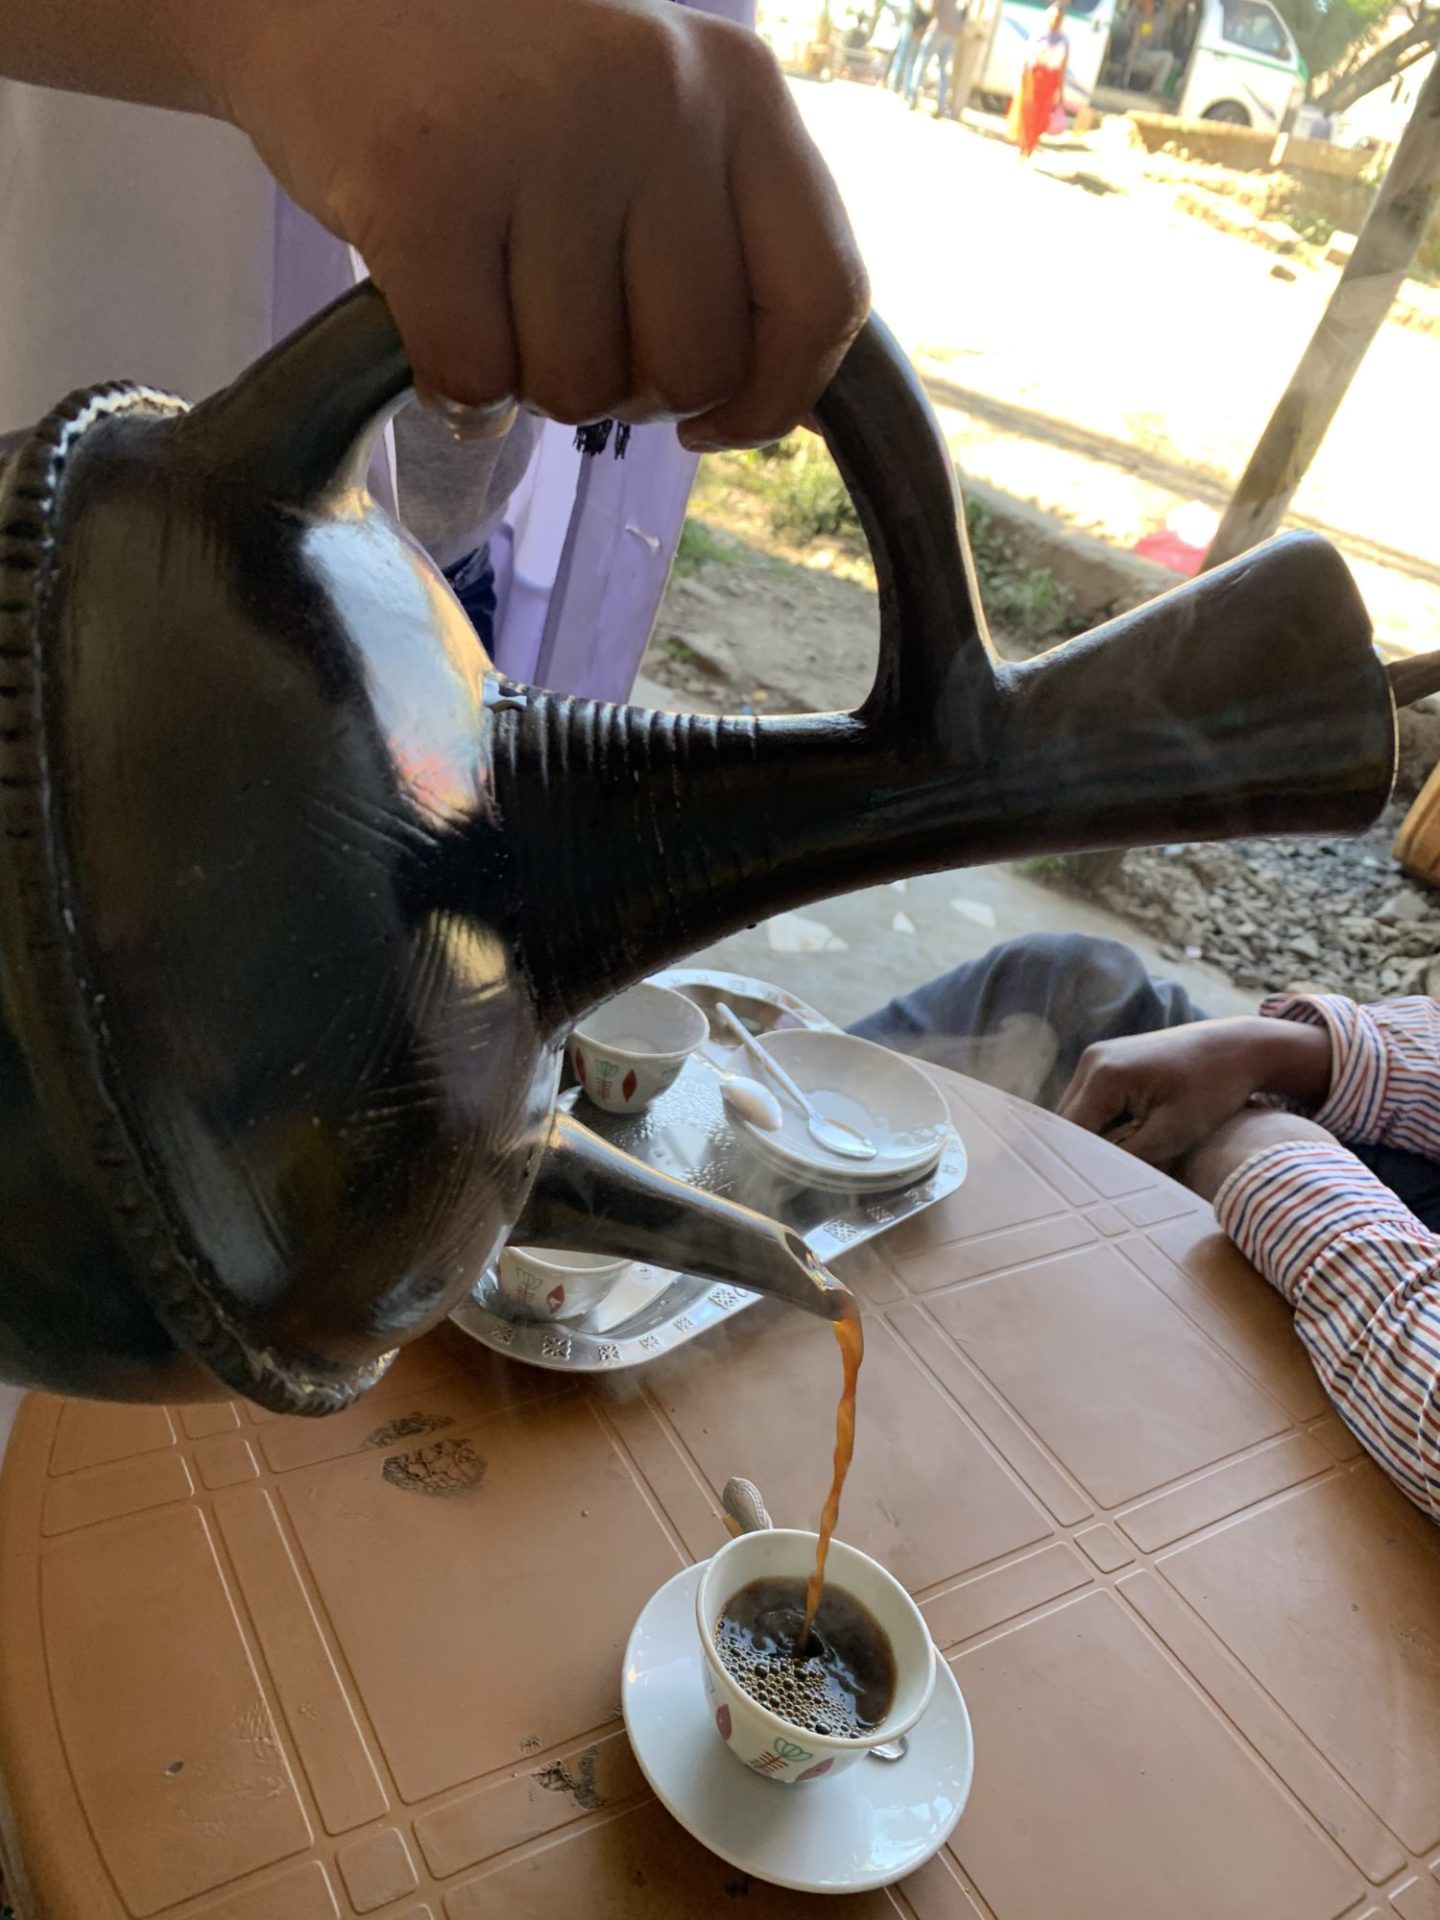 エチオピアコーヒー